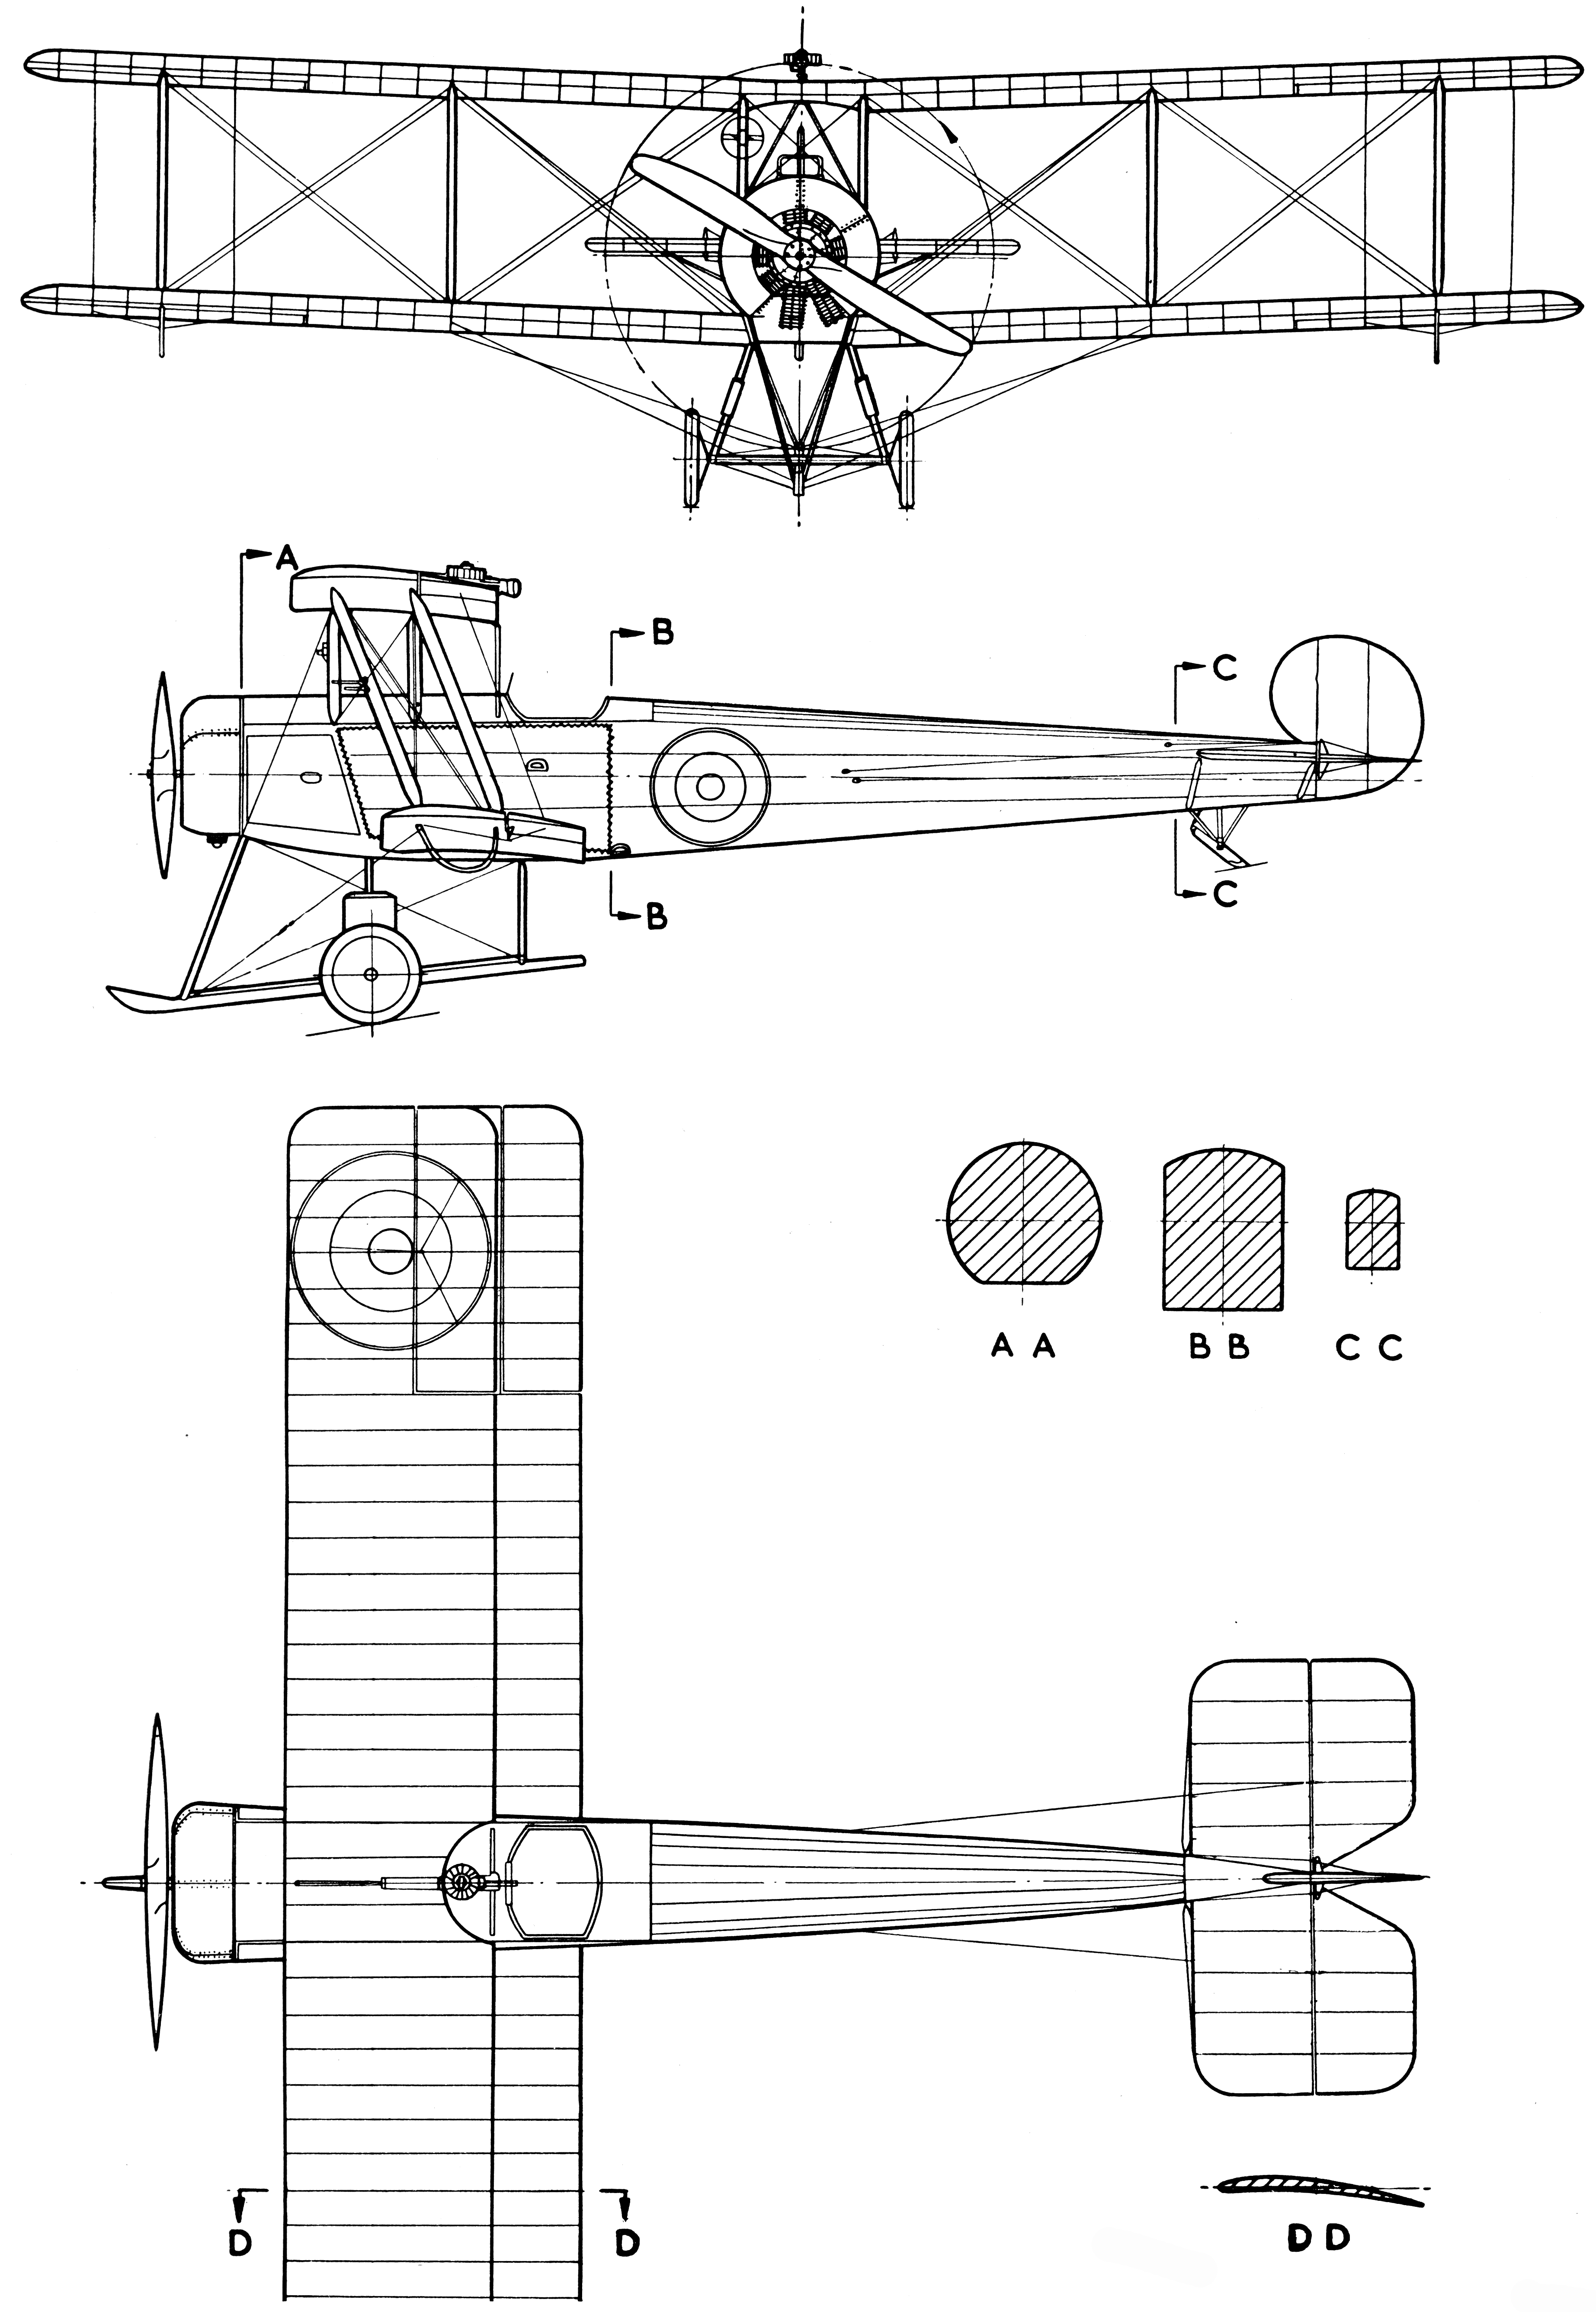 Avro 504K blueprint